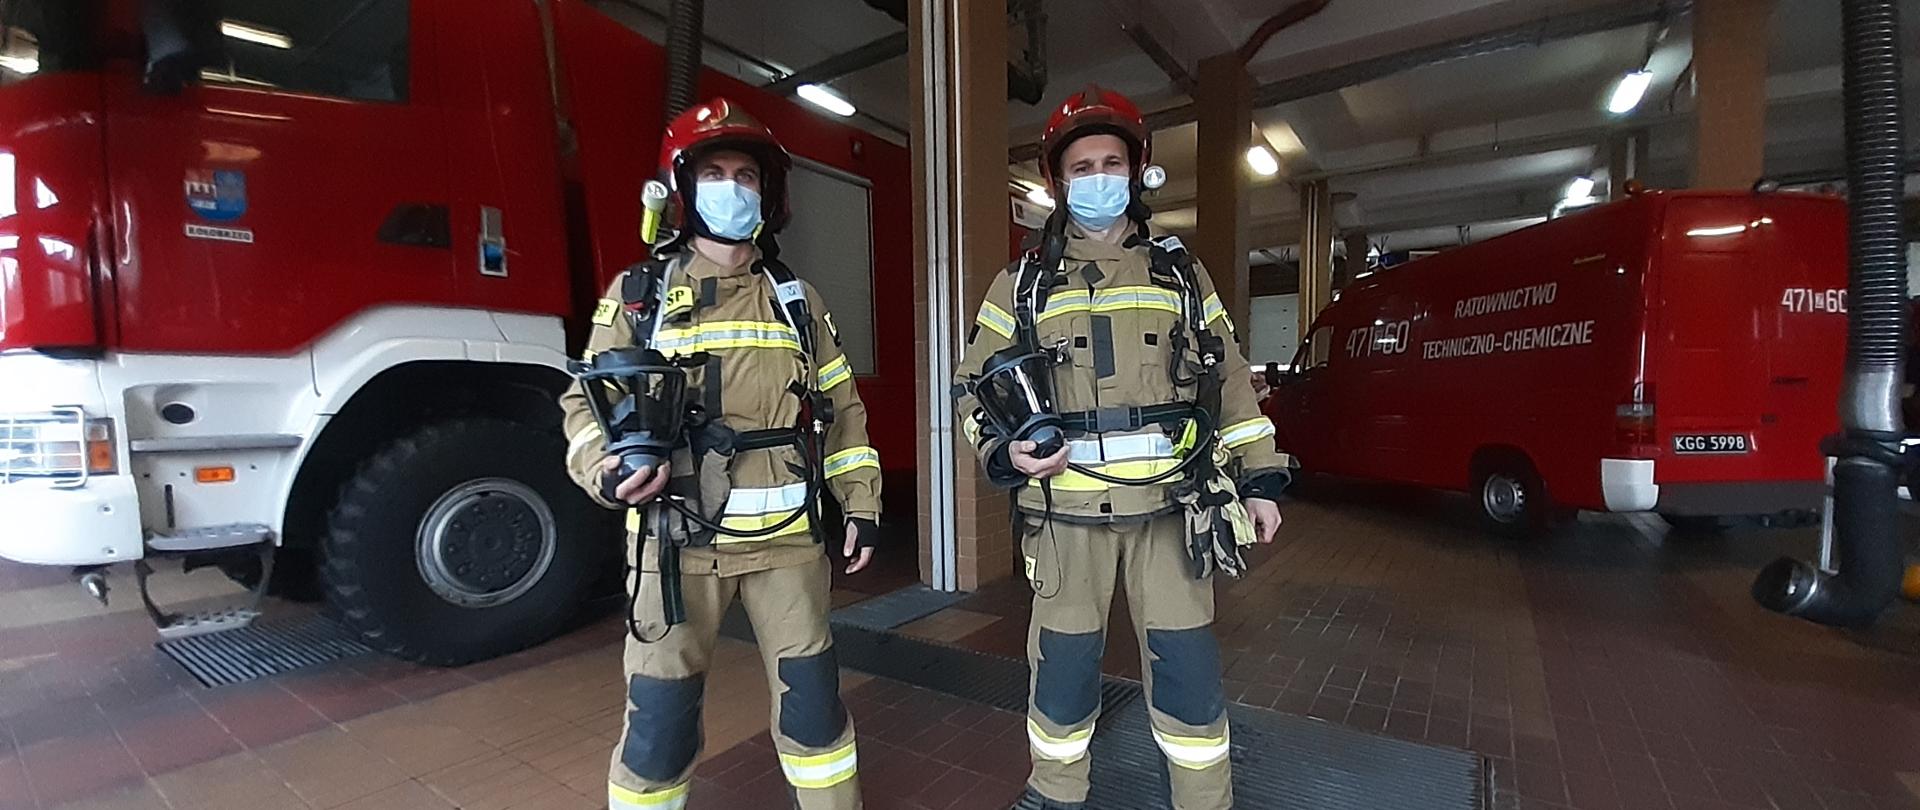 Dwóch strażaków ubranych w sprzęt ochrony dróg oddechowych na tle samochodów pożarniczych